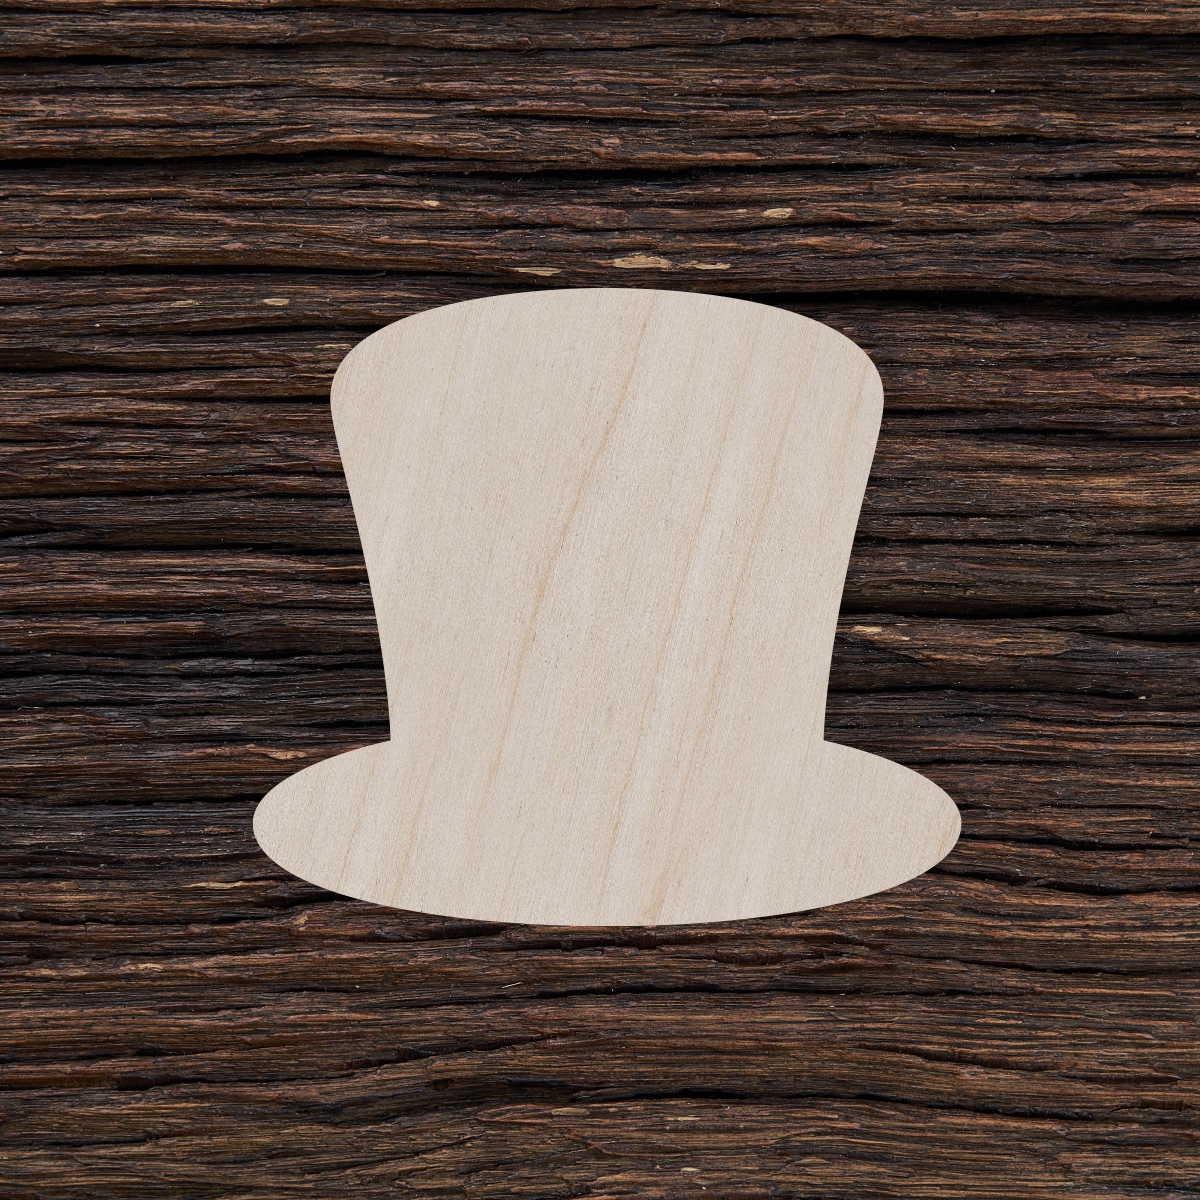 6Magiška skrybėlė - medinis gaminys, pjautas lazeriu - dekoravimui ir dažymui